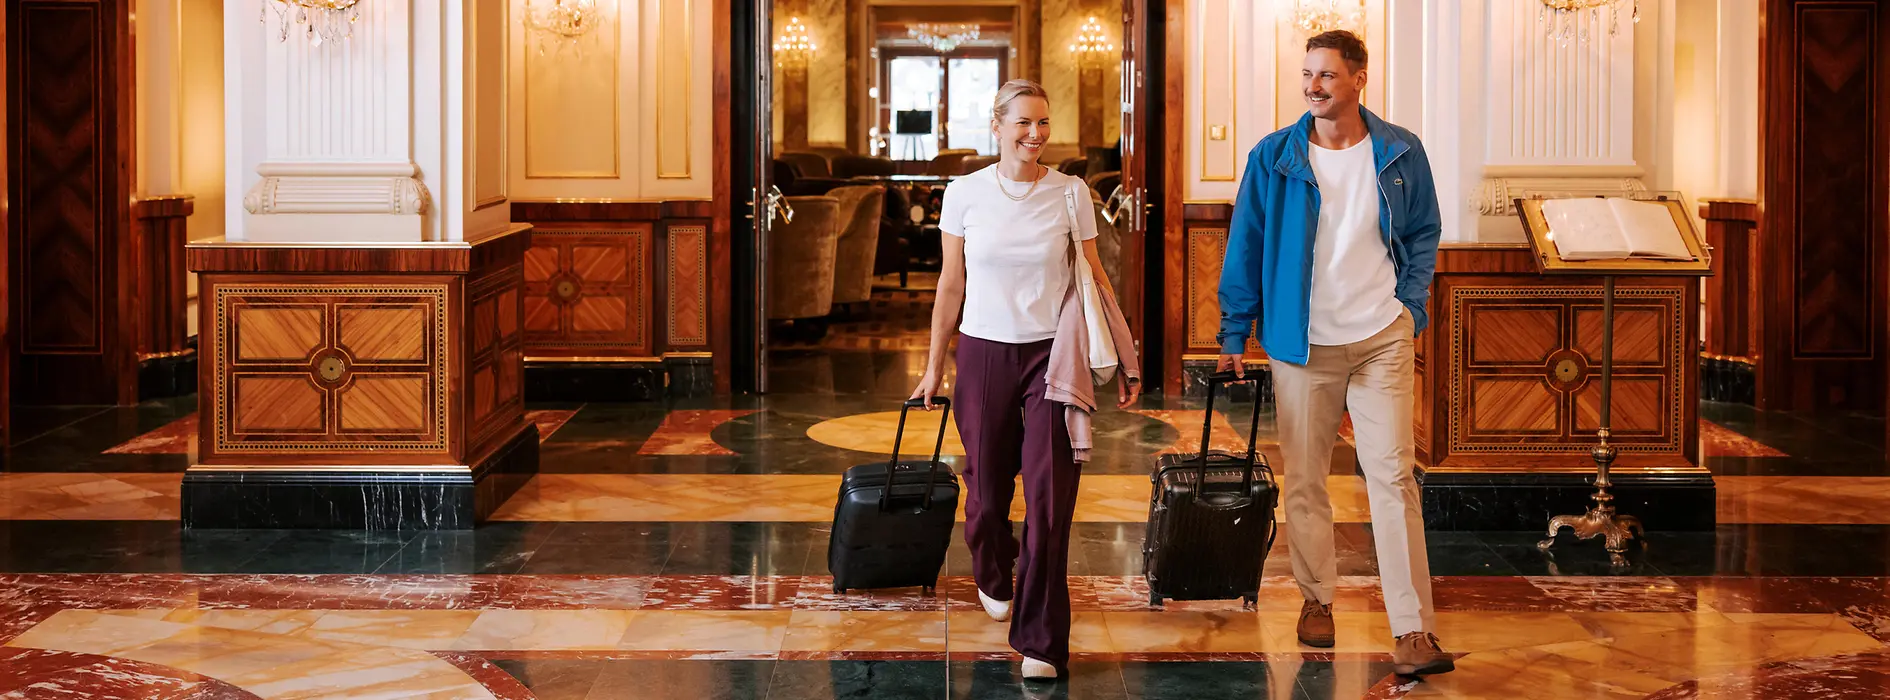 Două femei cu bagaje într-un hotel vienez